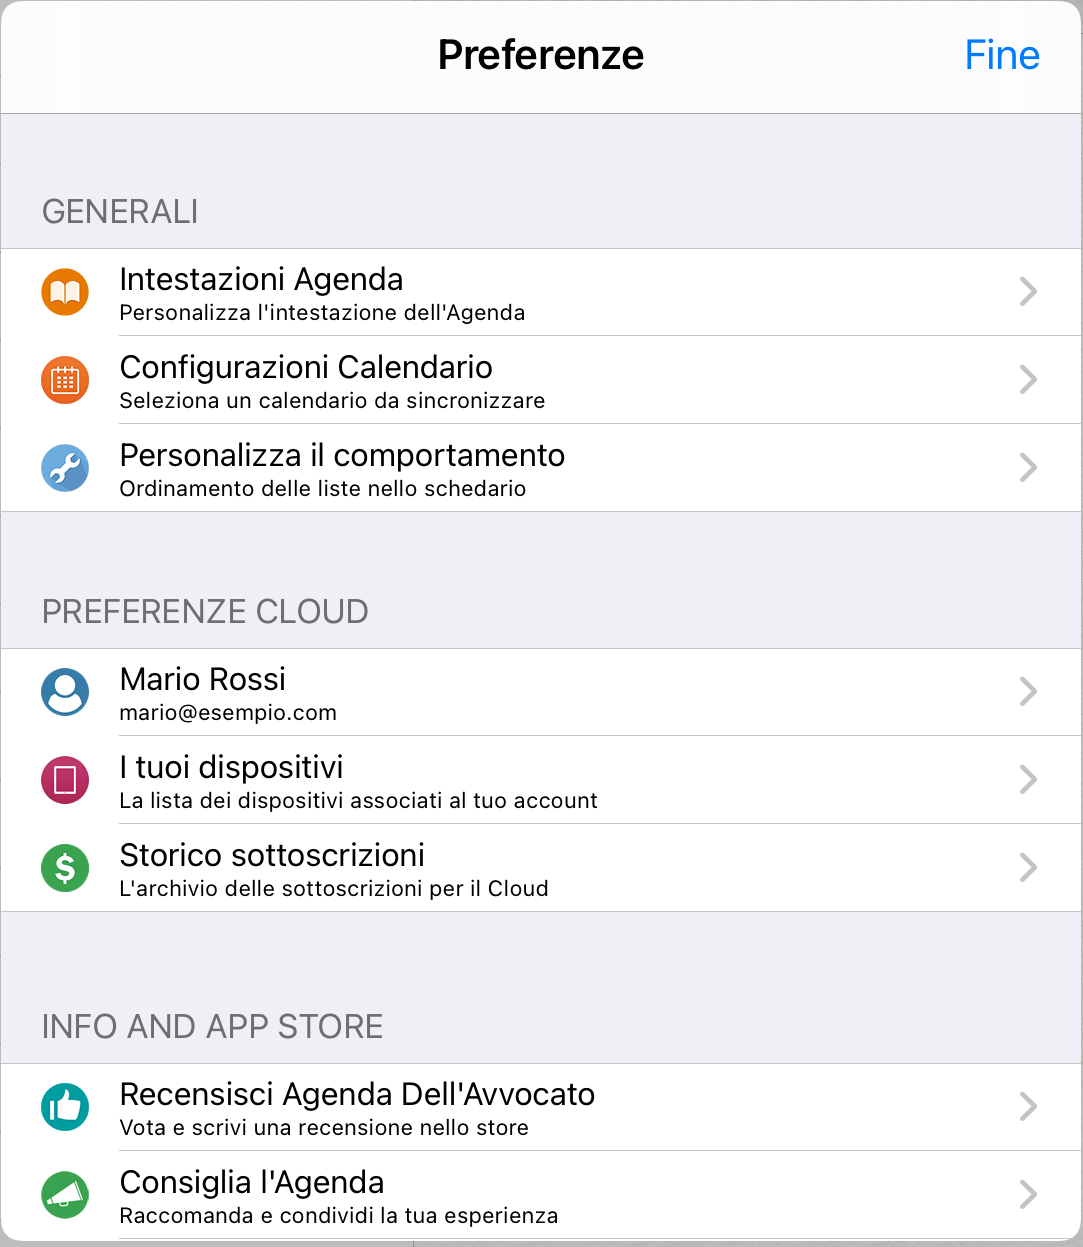 Gestisci i dispositivi autorizzati ad accedere al tuo account in Cloud